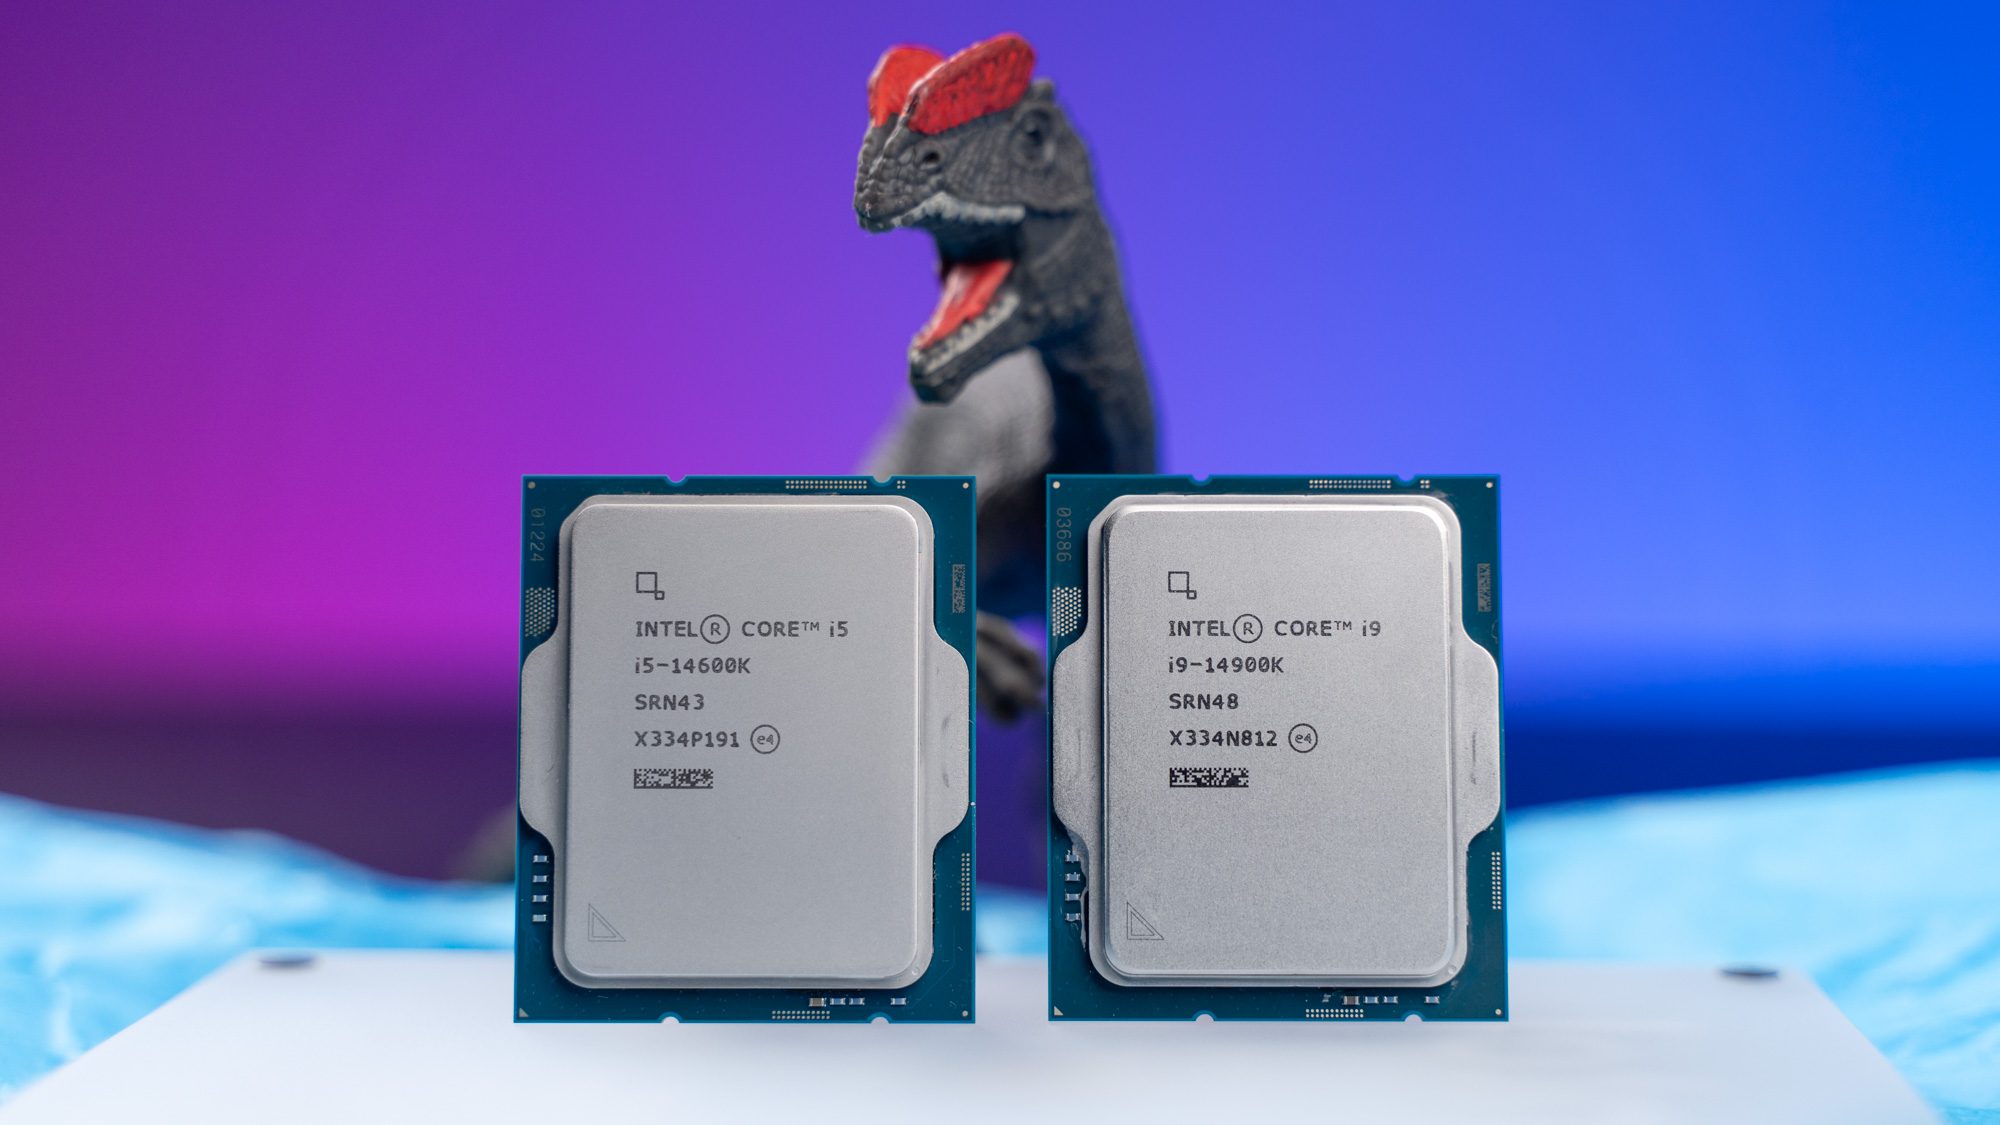 Zwei Intel-Prozessoren der 14. Generation, dahinter ein Spielzeug-Dinosaurier.